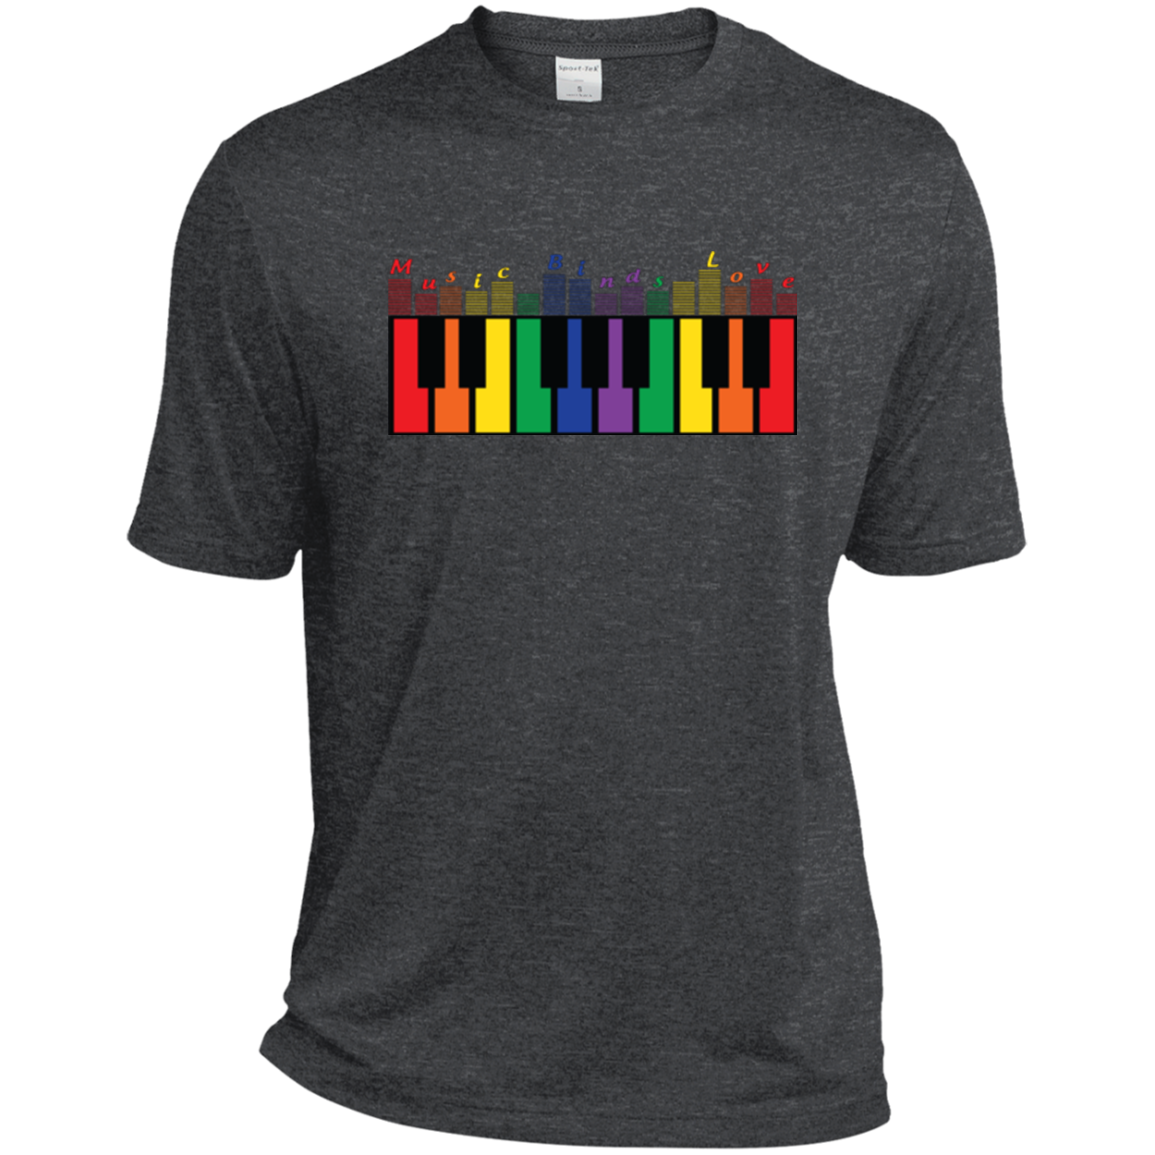 "Music Binds Love" Rainbow LGBT Pride dark grey round neck tshirt for men